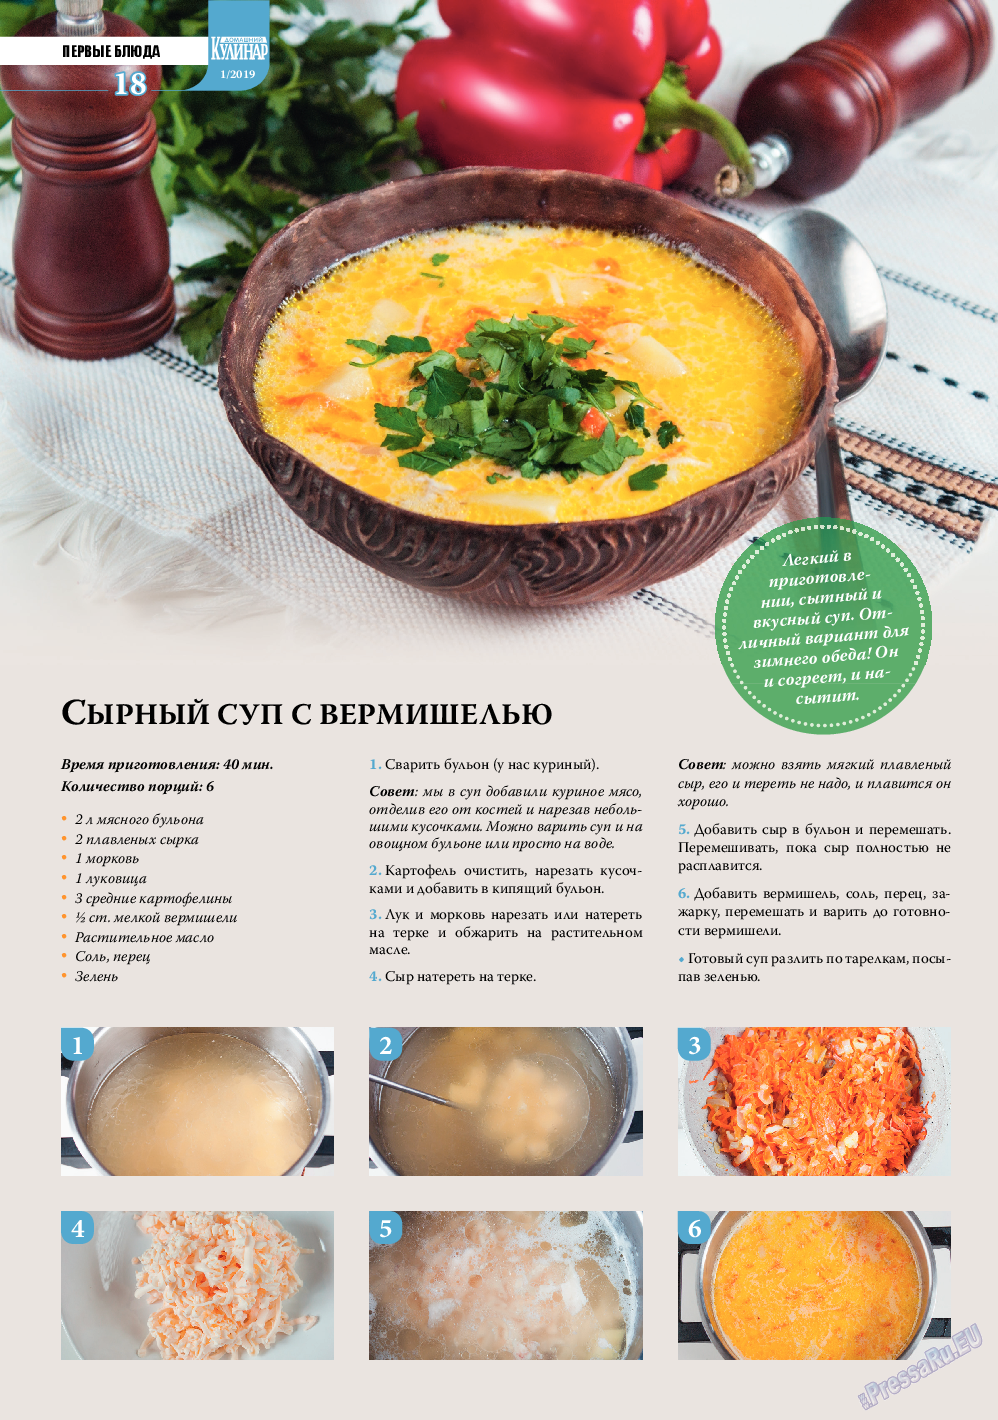 Домашний кулинар, журнал. 2019 №1 стр.18